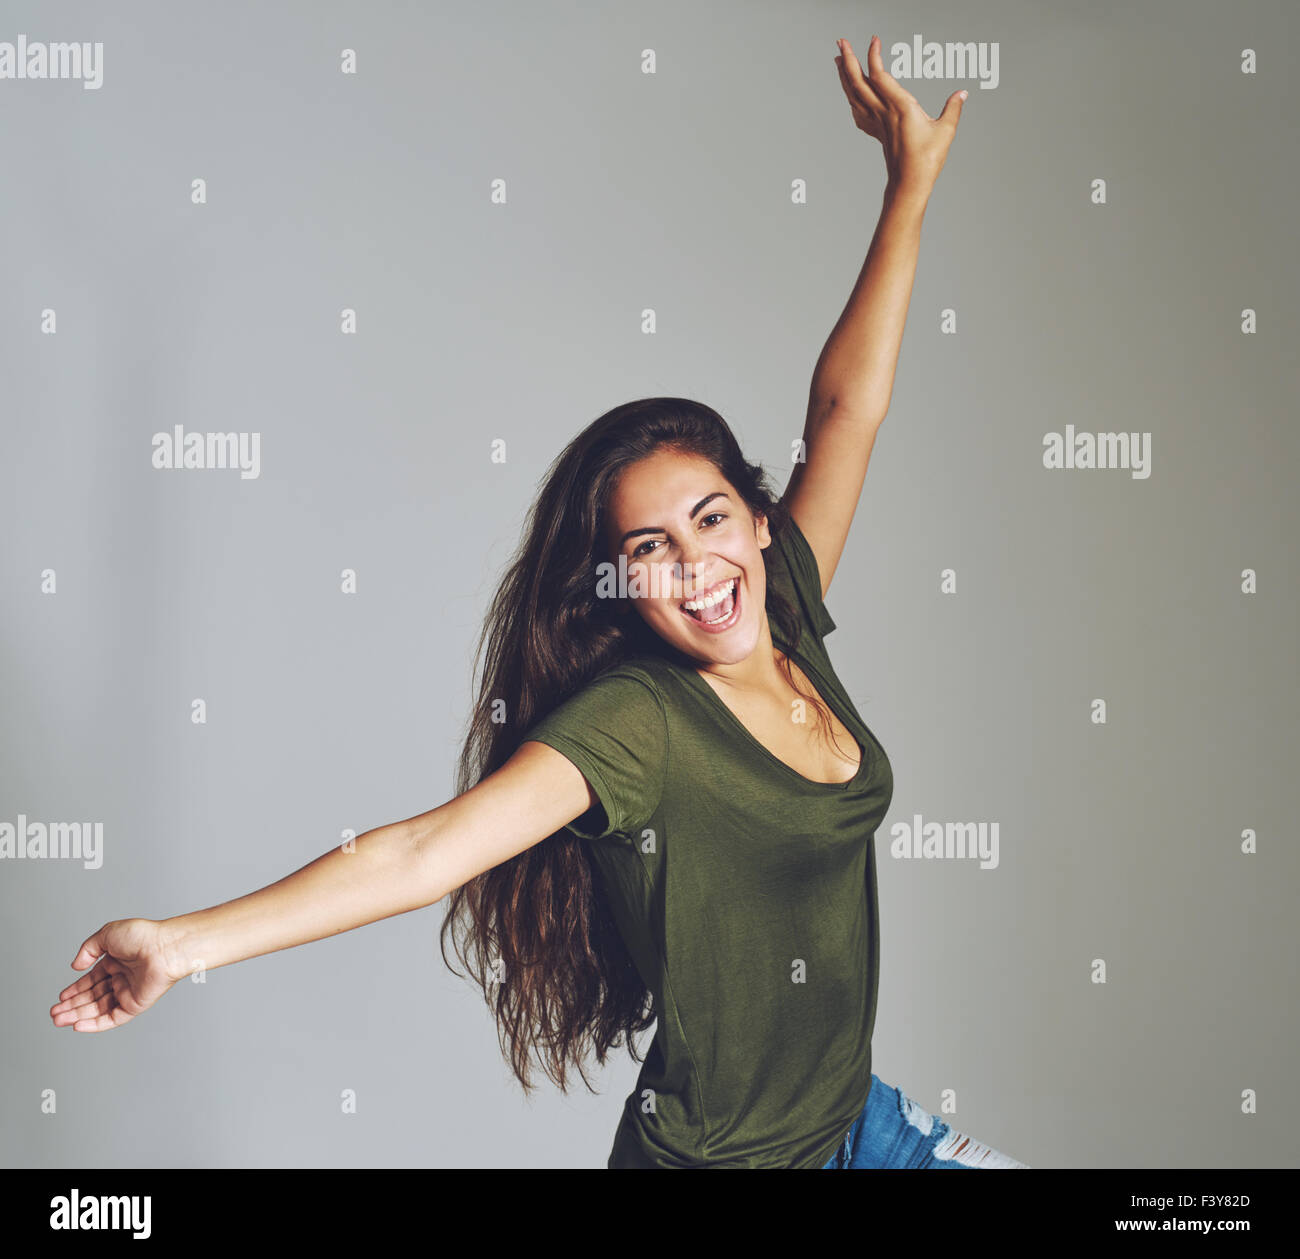 Vivaz atractivo joven casual celebra lanzando sus brazos en el aire y reírse de la cámara, más gris en la plaza Foto de stock